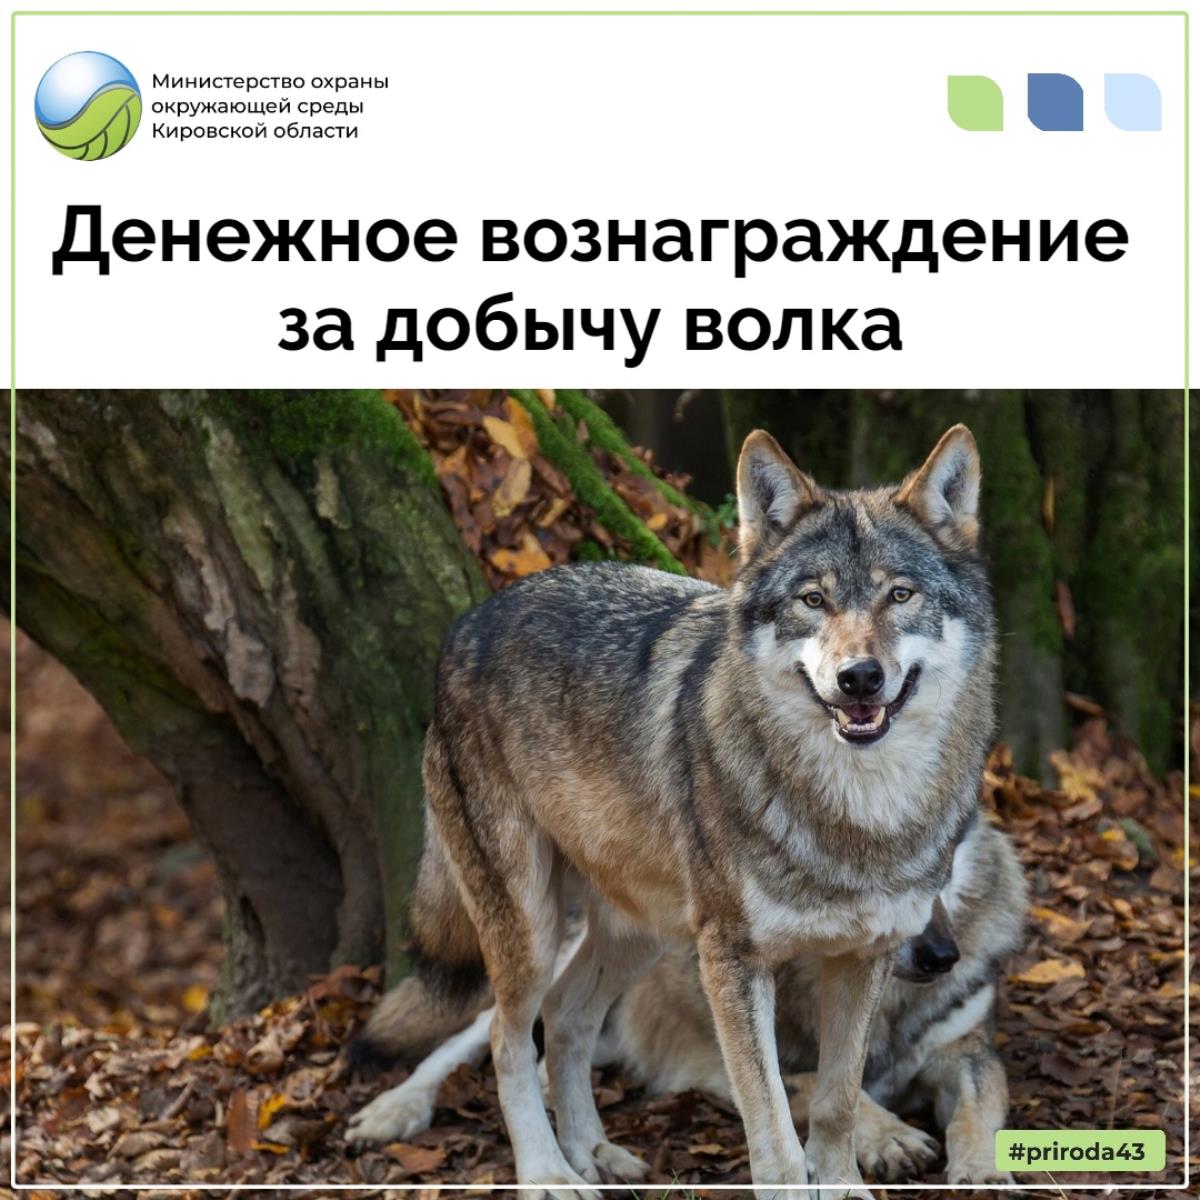 Для предупреждения угрозы захода волков в населенные пункты